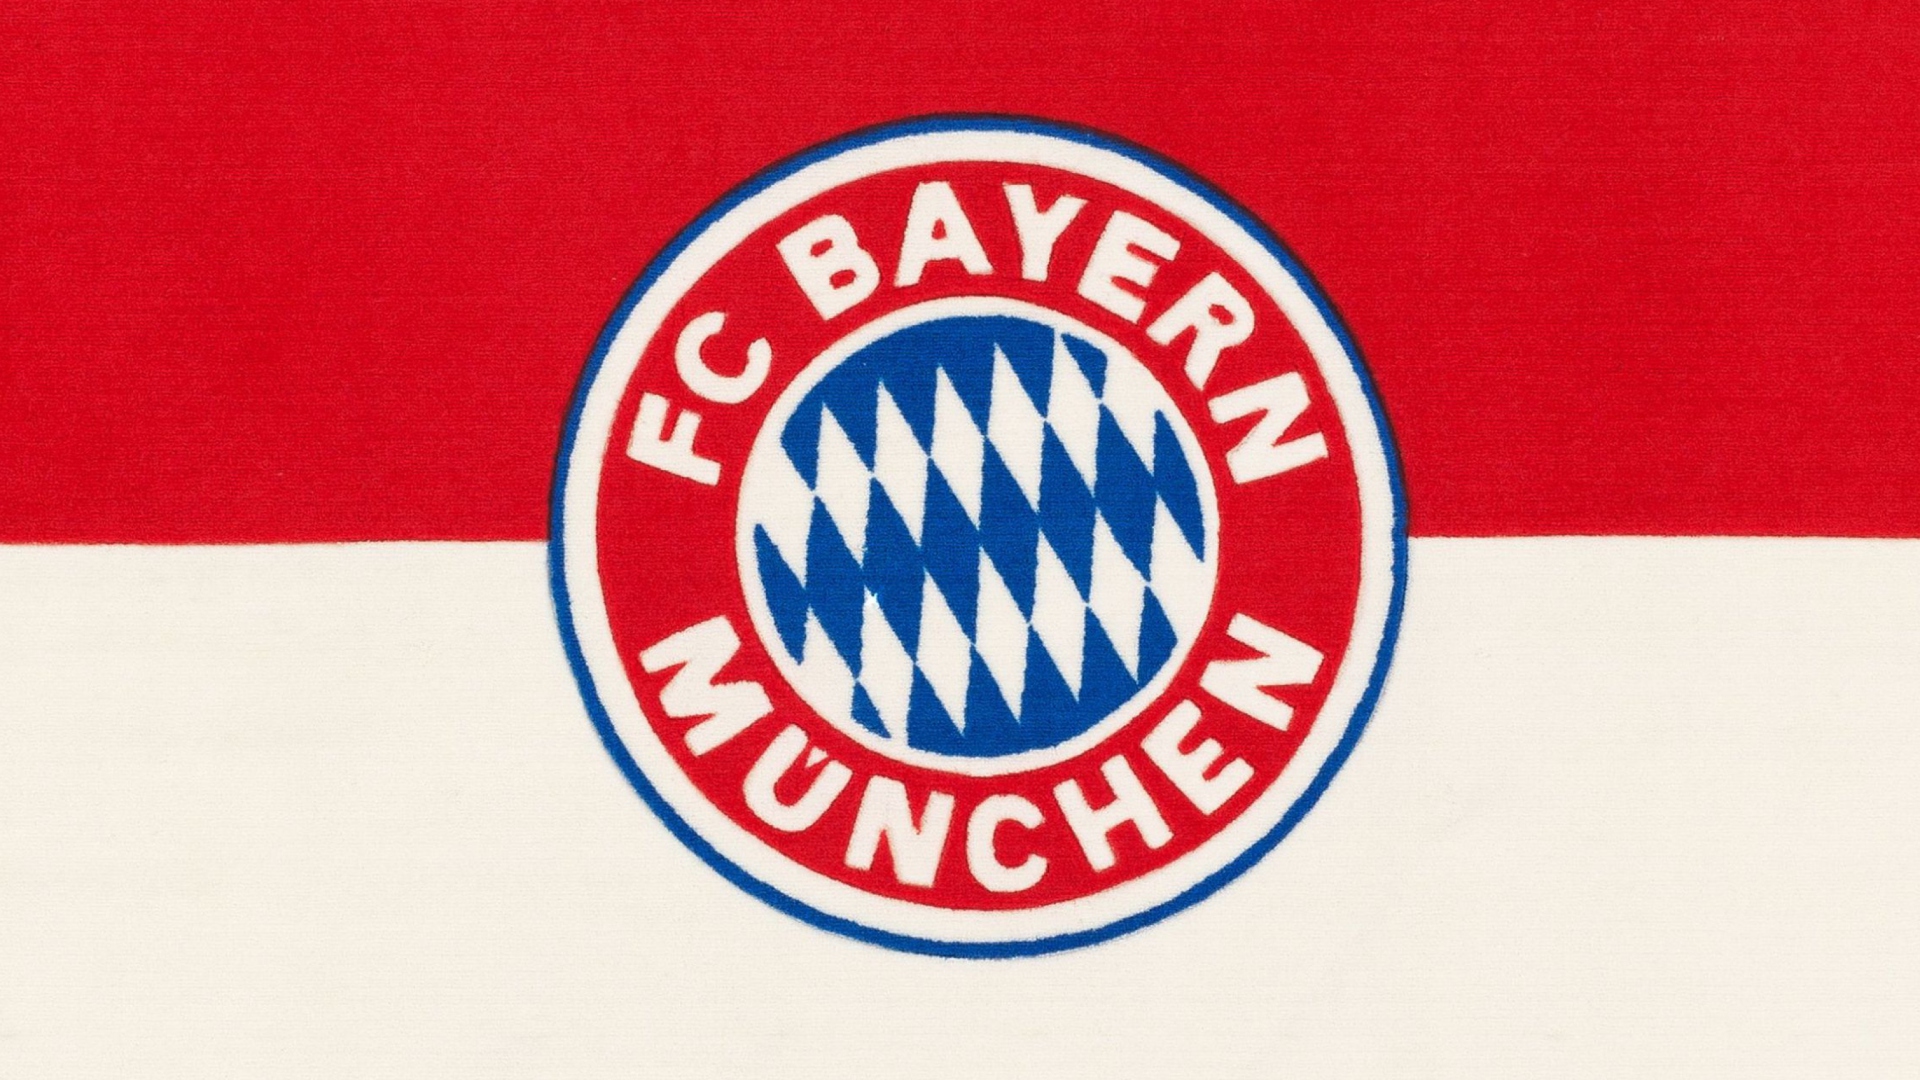 Fc Bayern Munchen wallpaper 1920x1080